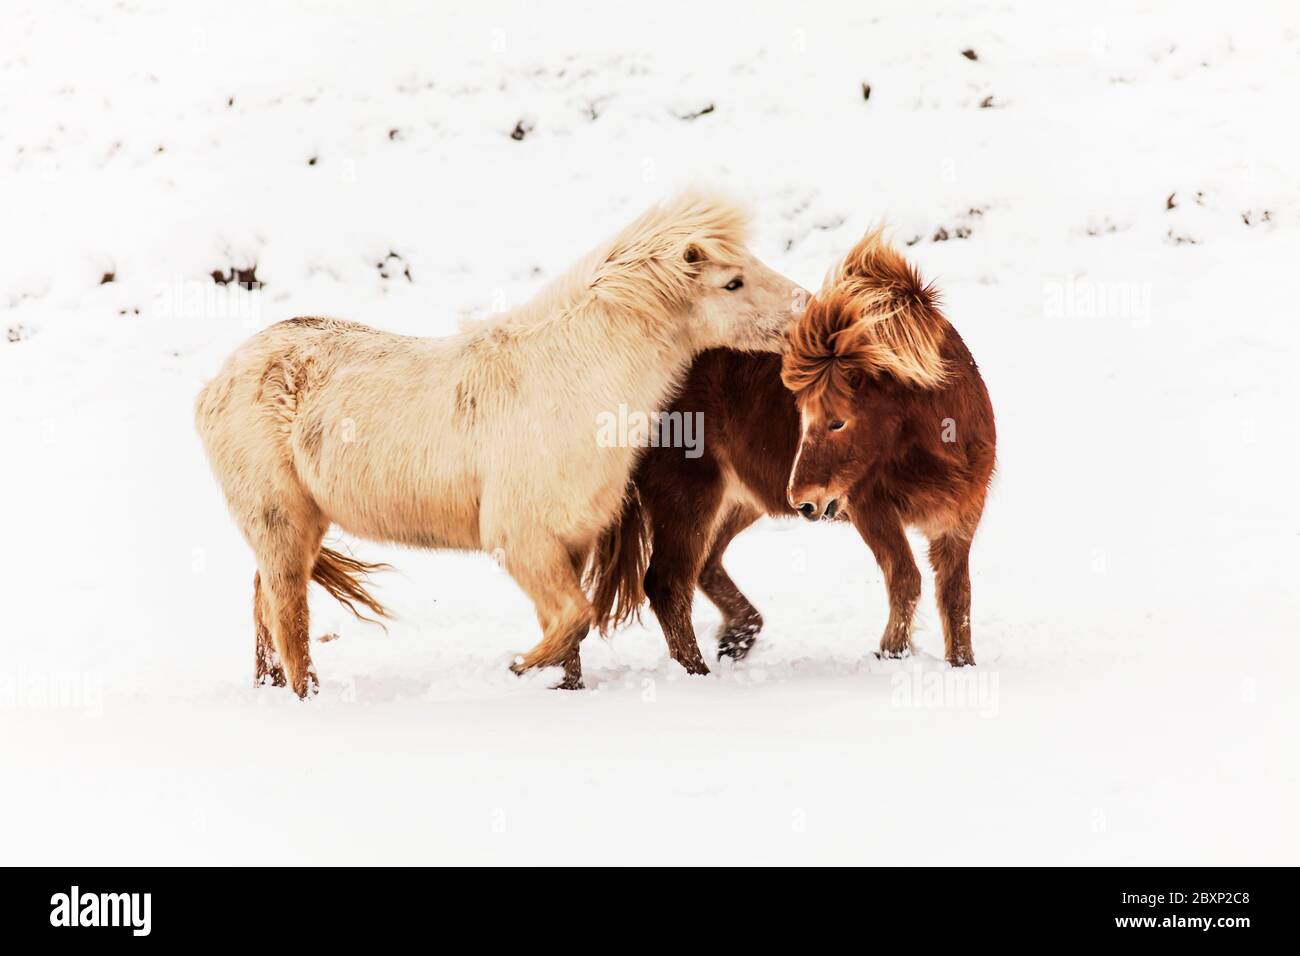 Islande véritable cheval pendant la neige d'hiver pour la photographie d'animaux Banque D'Images